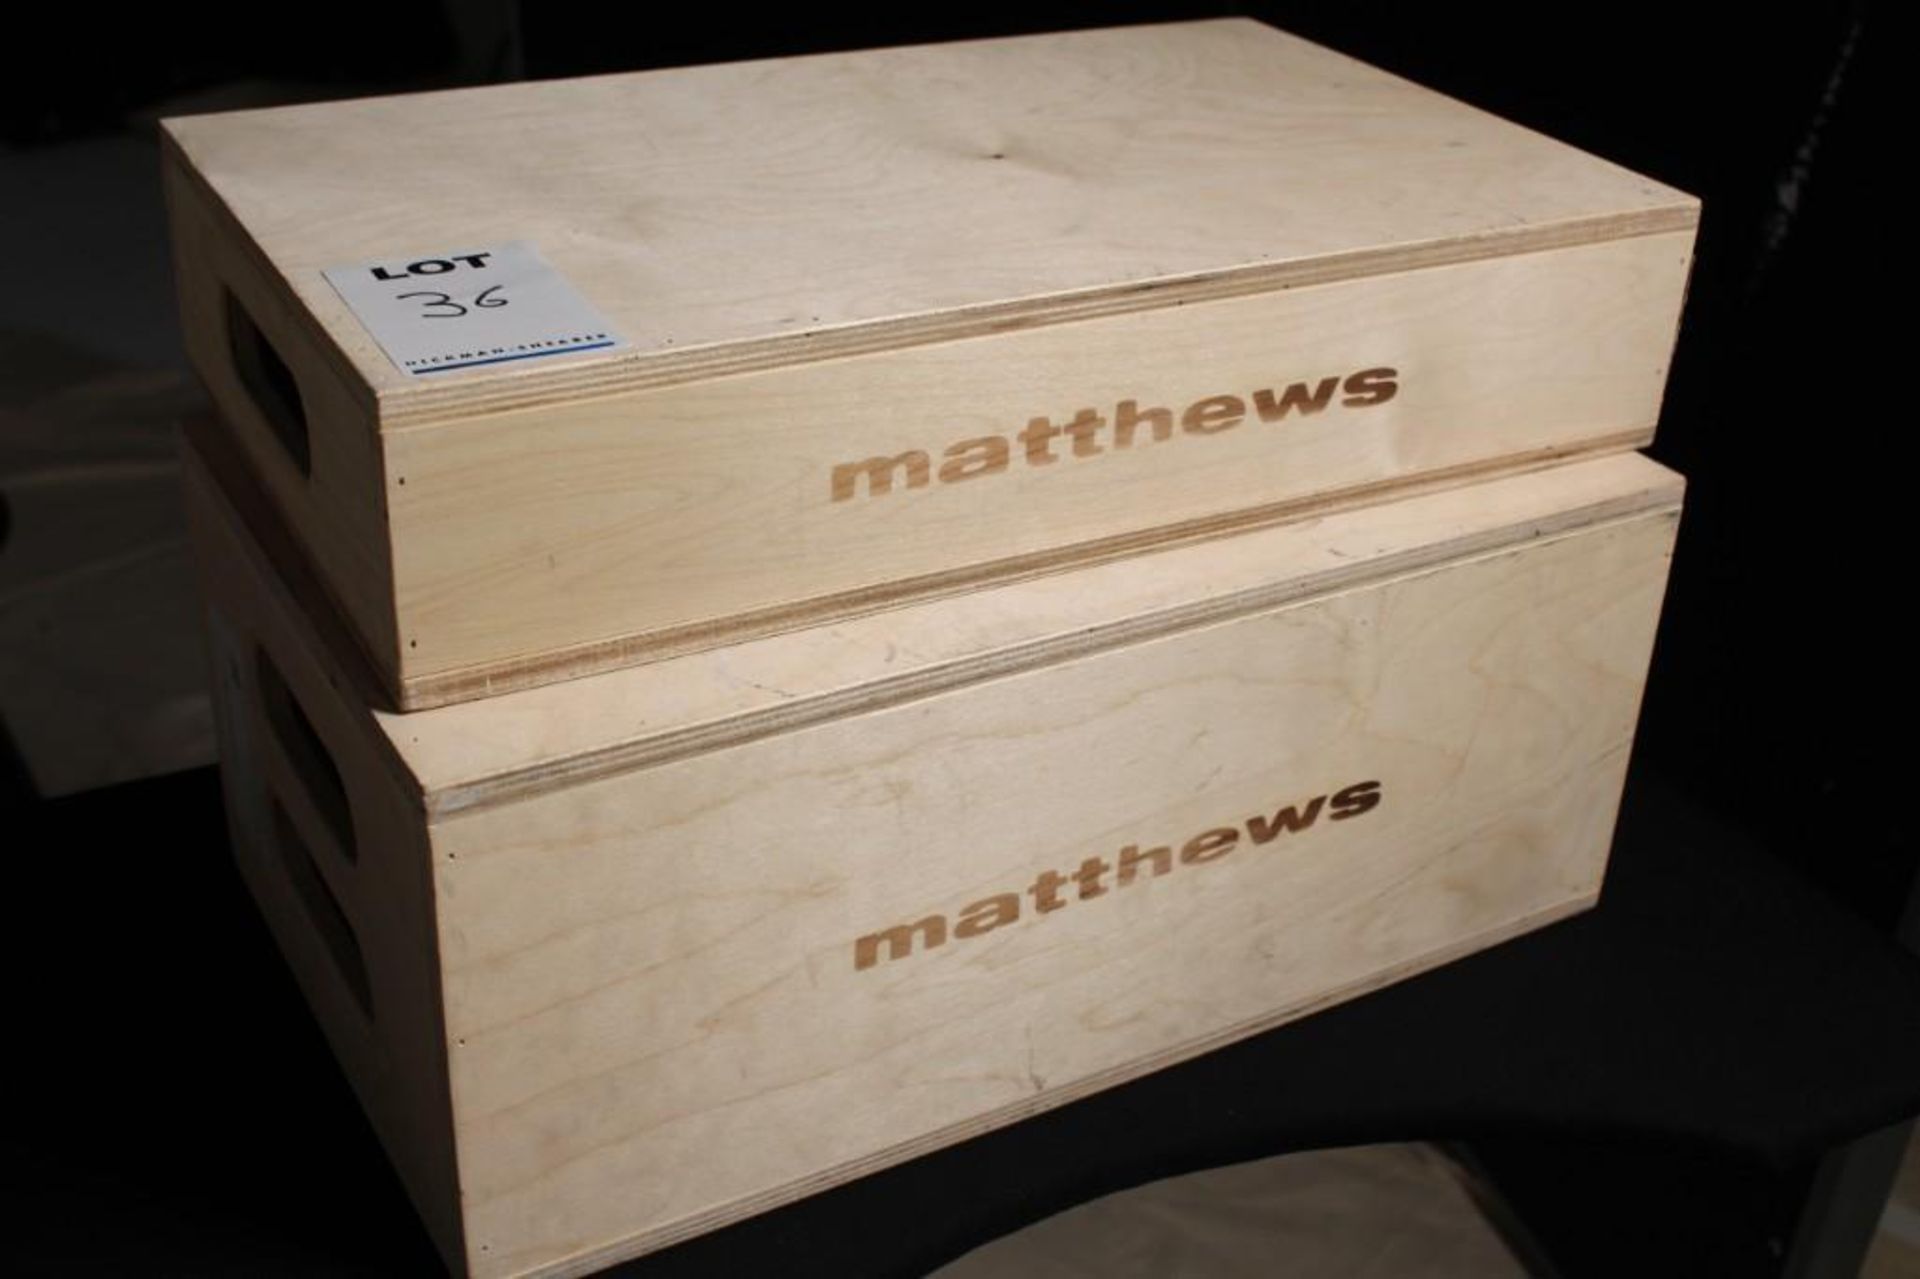 2x Matthews Apple boxes